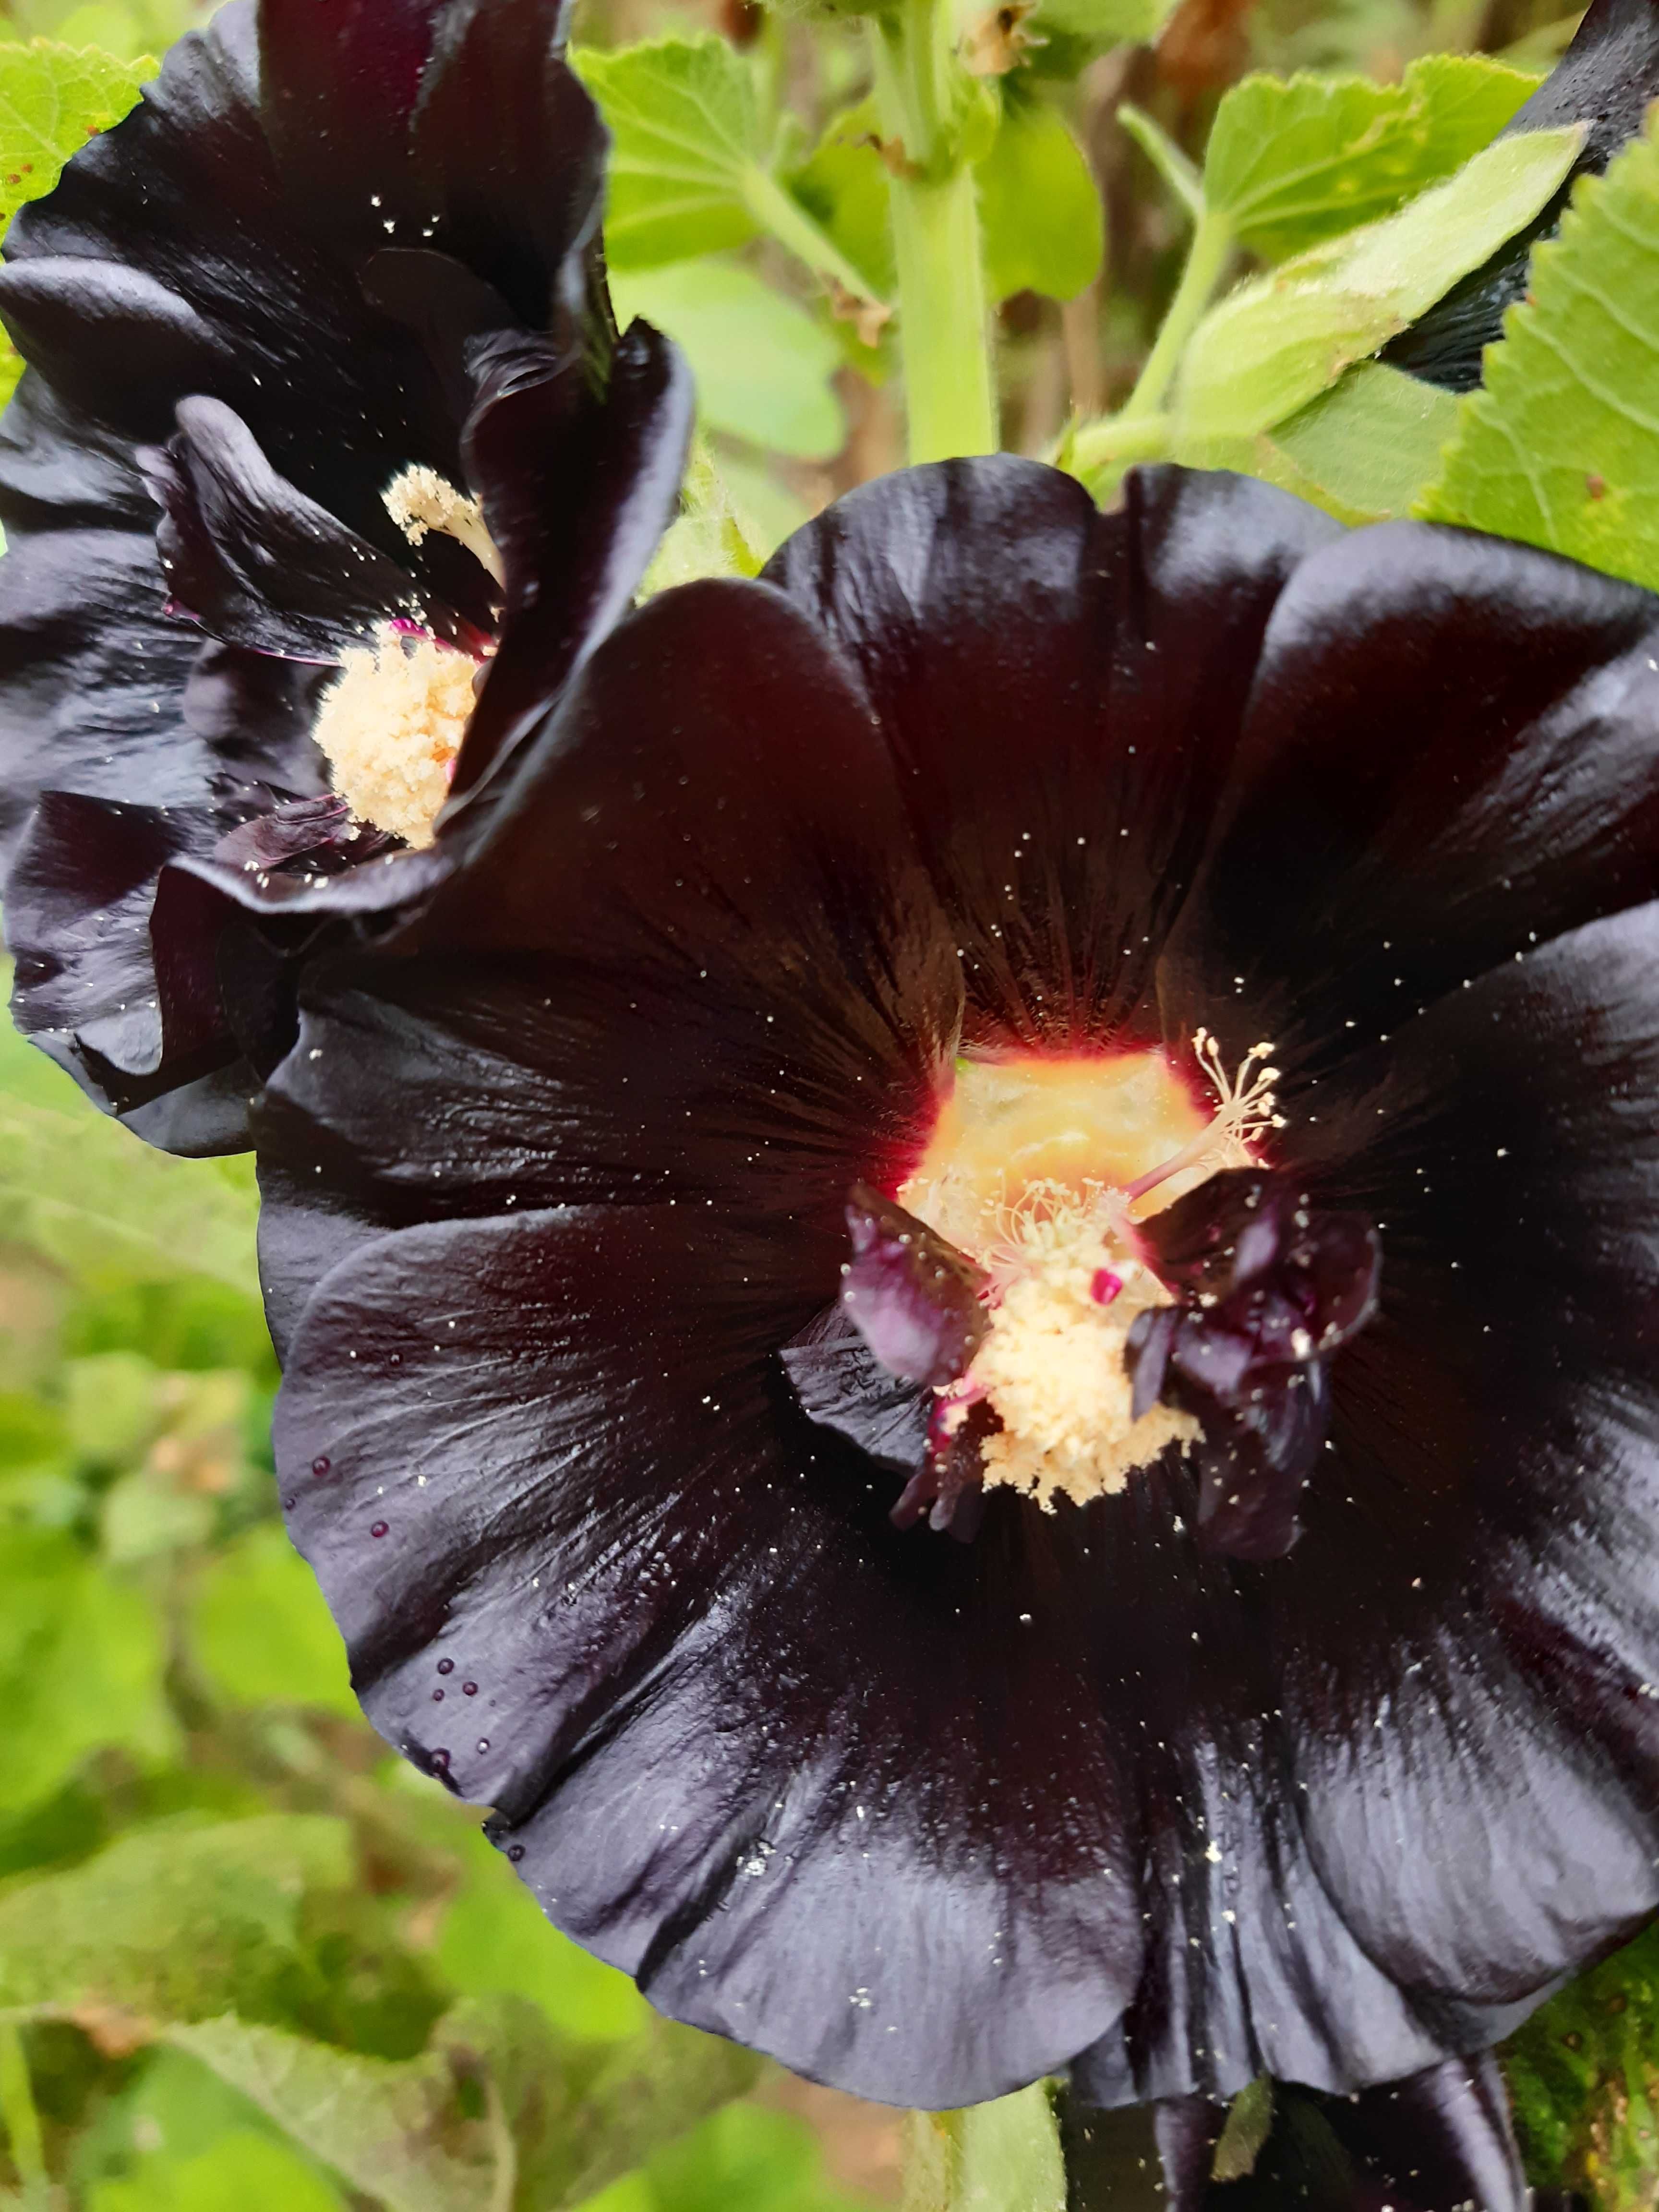 Kwiat malwy czarnej suszony